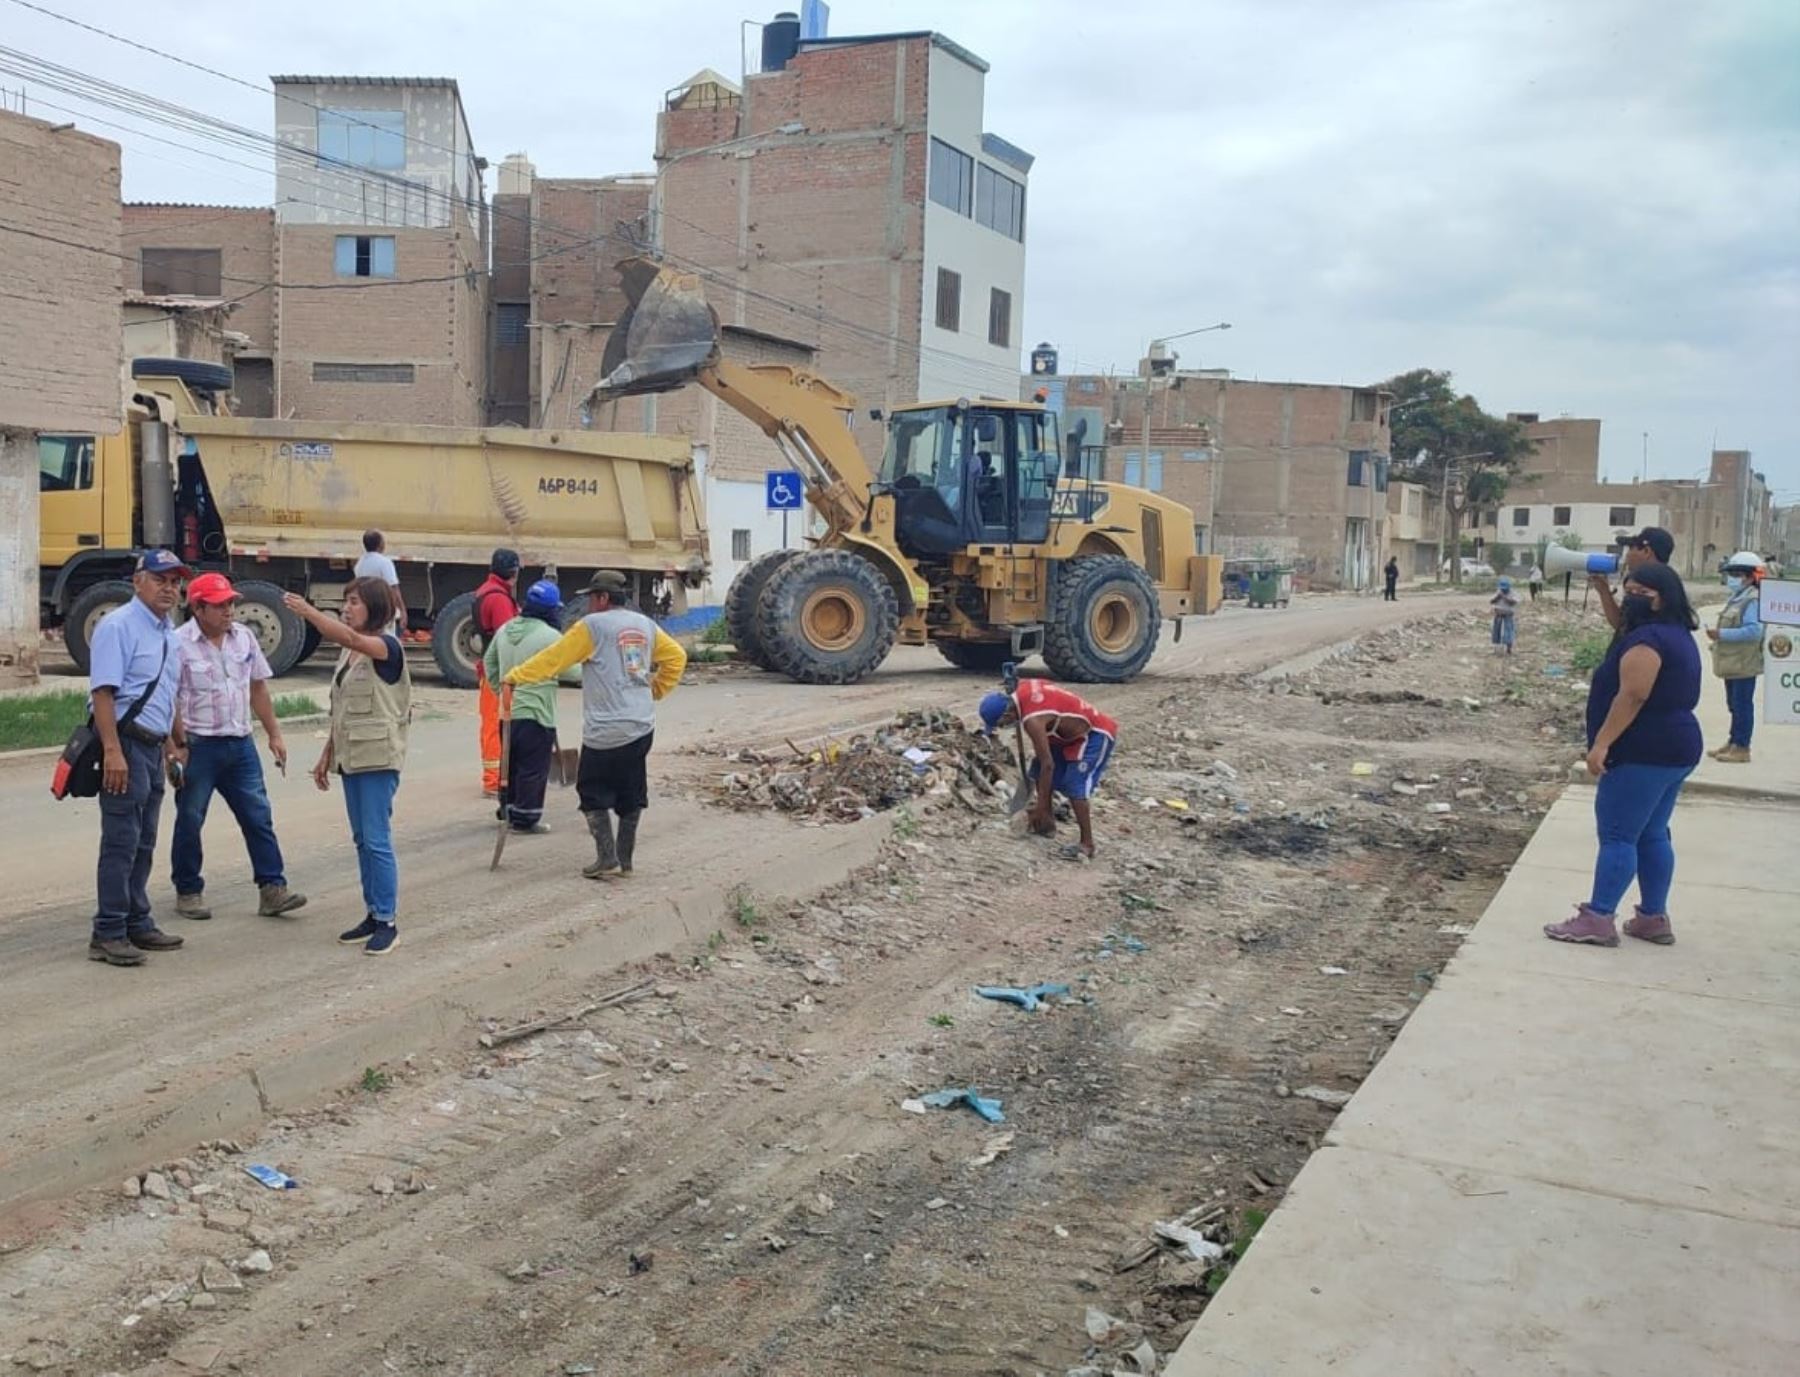 Alrededor de 215 toneladas de residuos sólidos se recogieron de diversas calles de la ciudad de Chiclayo durante una jornada de limpieza ejecutada por la municipalidad.